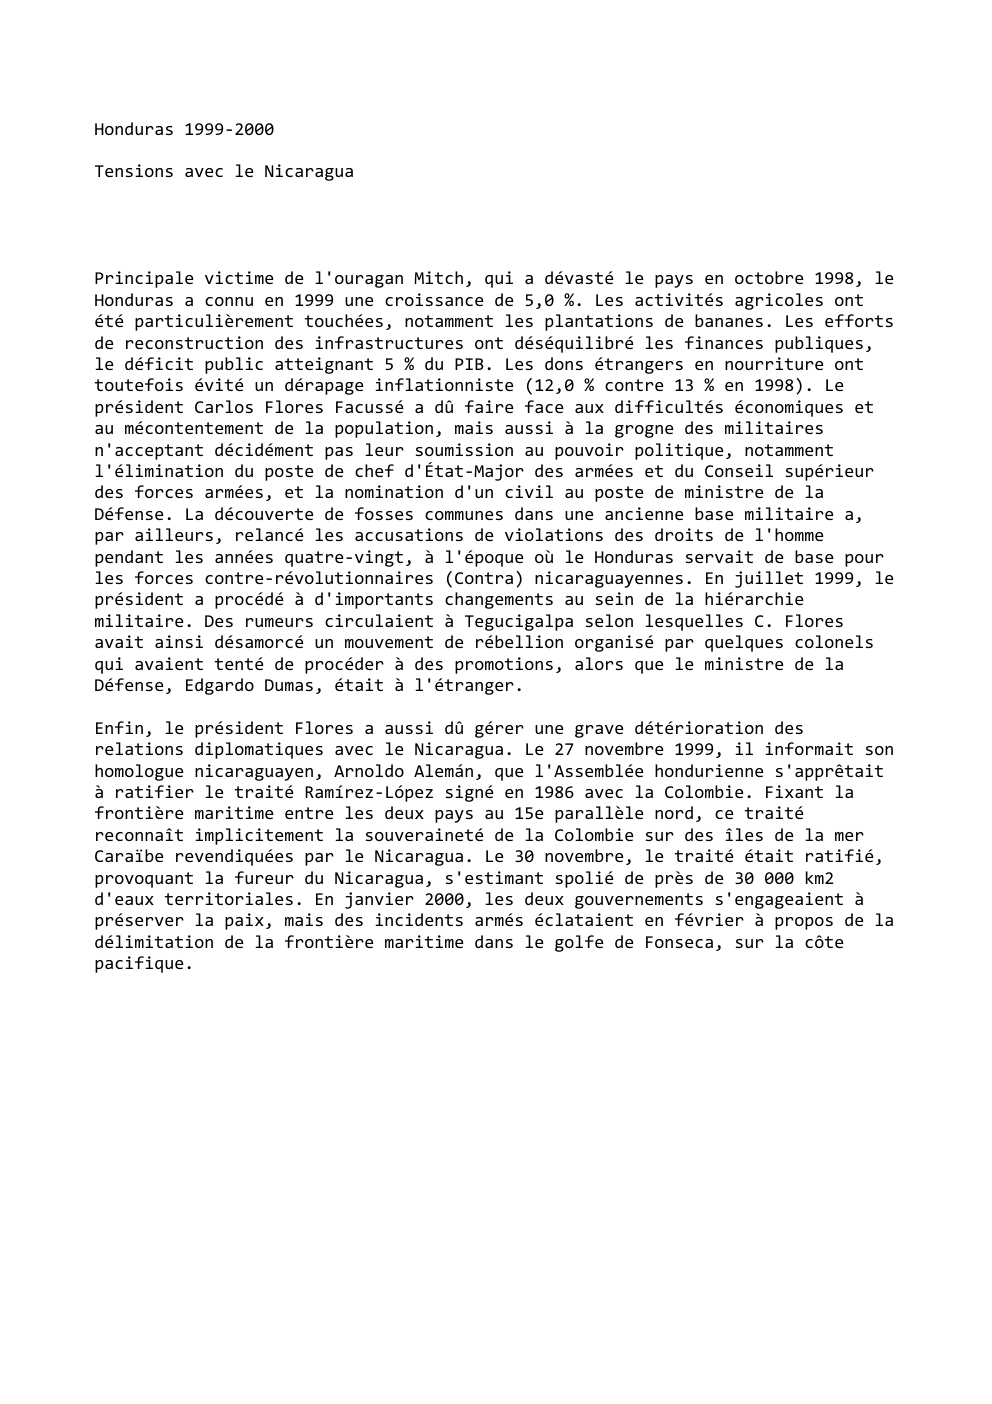 Prévisualisation du document Honduras 1999-2000
Tensions avec le Nicaragua

Principale victime de l'ouragan Mitch, qui a dévasté le pays en octobre 1998, le...